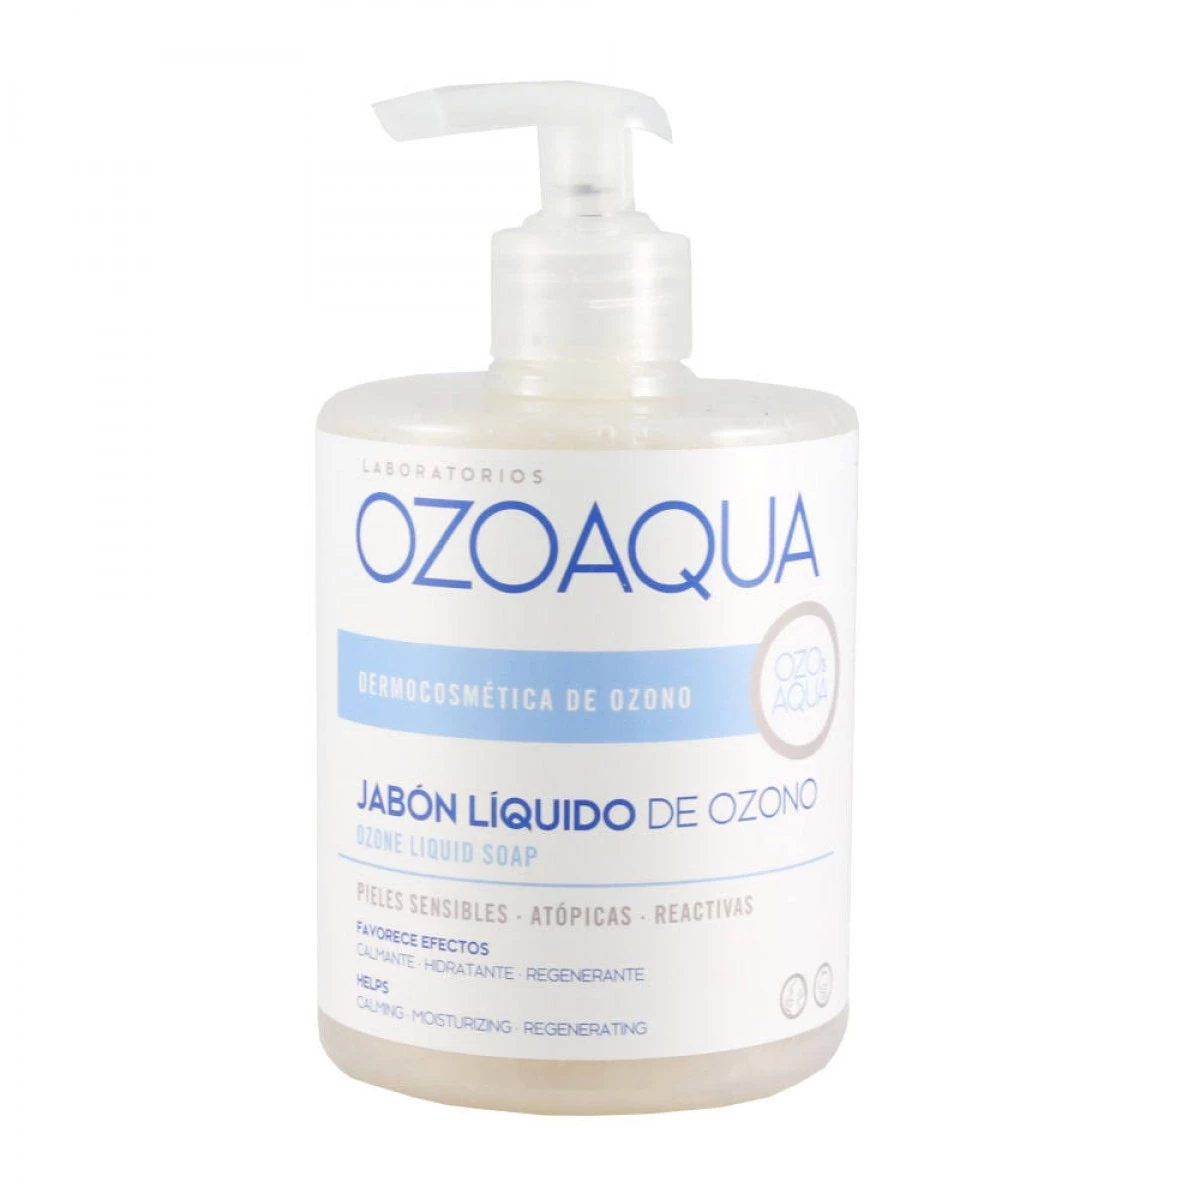 Ozoaqua jabón líquido manos y cuerpo 500 ml